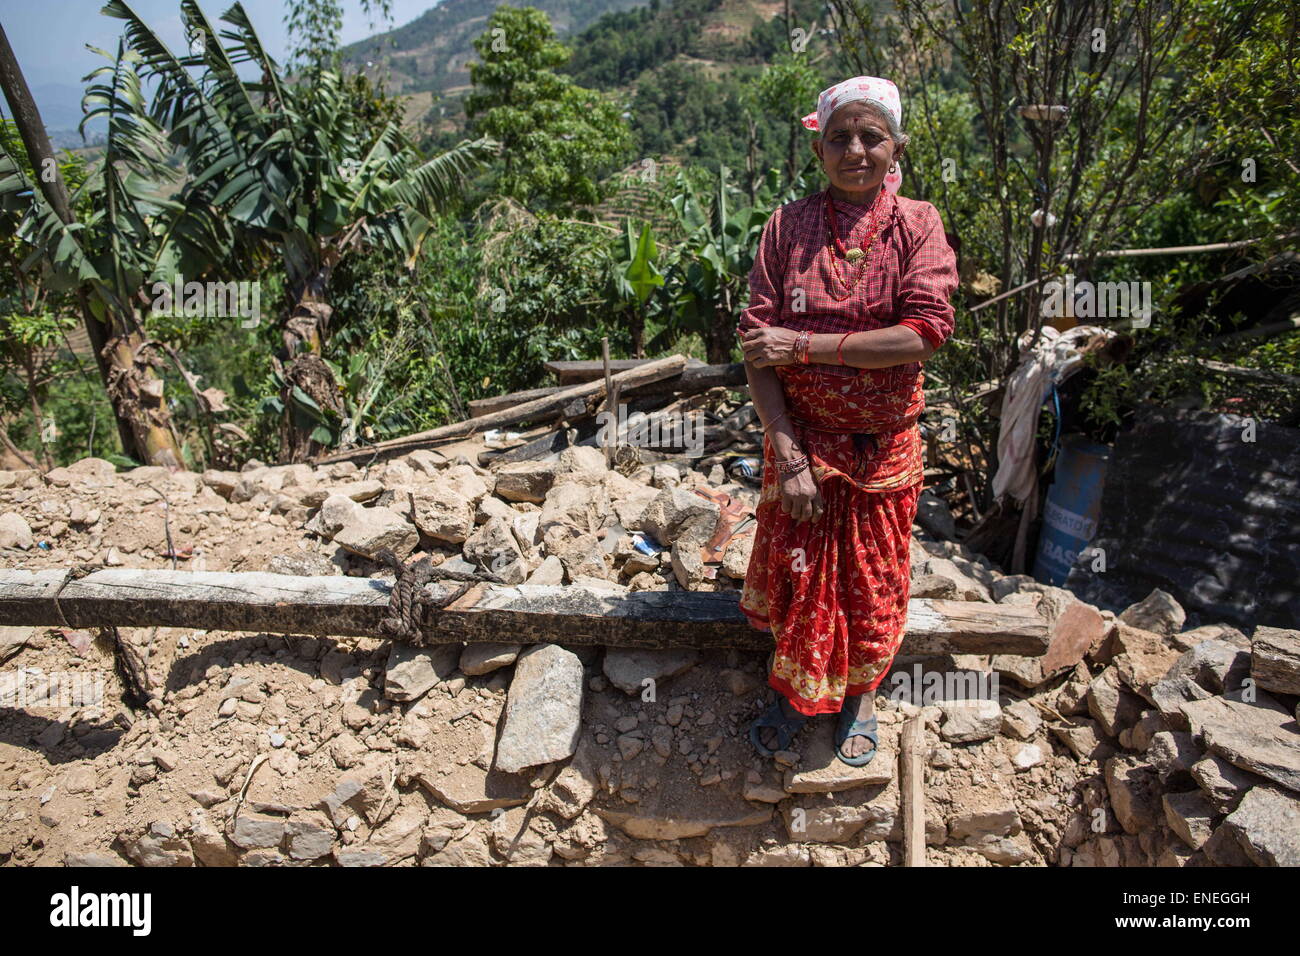 Thumka Village Tole, Népal. 3 mai, 2015. Une femme est représentée dans le milieu de la rocailles à l'Thumka Sindhupalchwok Tole Village dans le district comme l'équipe de sauvetage britannique est venu il y a quelques jours, pour donner aux tentes mais pas même la nourriture et l'eau. Des survivants du tremblement de terre à l'extérieur de Khatmandu népalais attendent toujours plus d'approvisionnements et de l'aide de la sauve, plus d'une semaine après le séisme meurtrier qui tuent plus de 7000 personnes au Népal, autour de 14000 blessés, et plus de 500000 sans-abri. © Guillaume Payen/ZUMA/ZUMAPRESS.com/Alamy fil Live News Banque D'Images